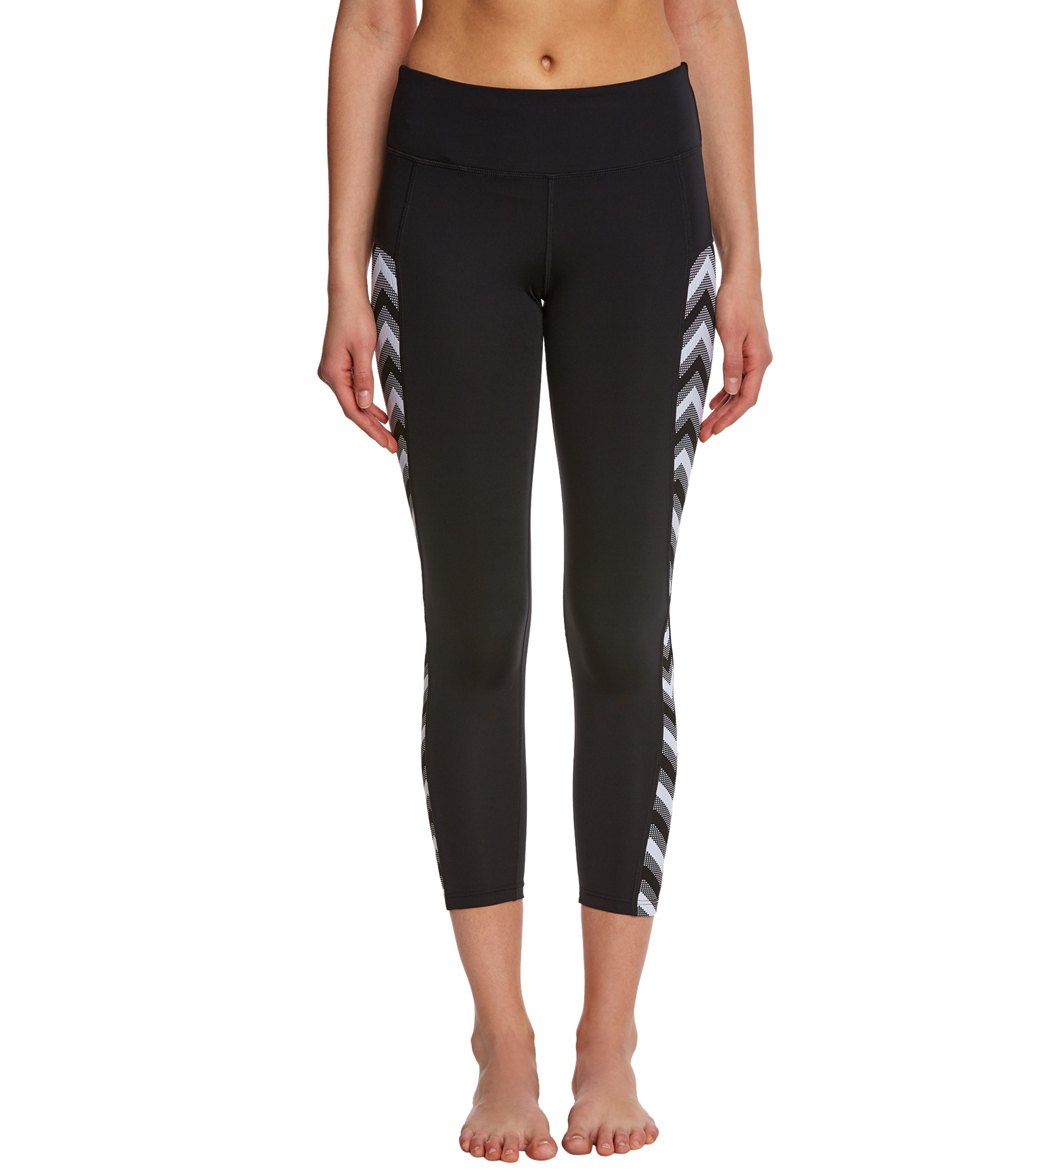 Seafolly Women's Horizon Luxe 7/8 Fitness Leggings - Black/White Large Nylon/Elastane - Swimoutlet.com